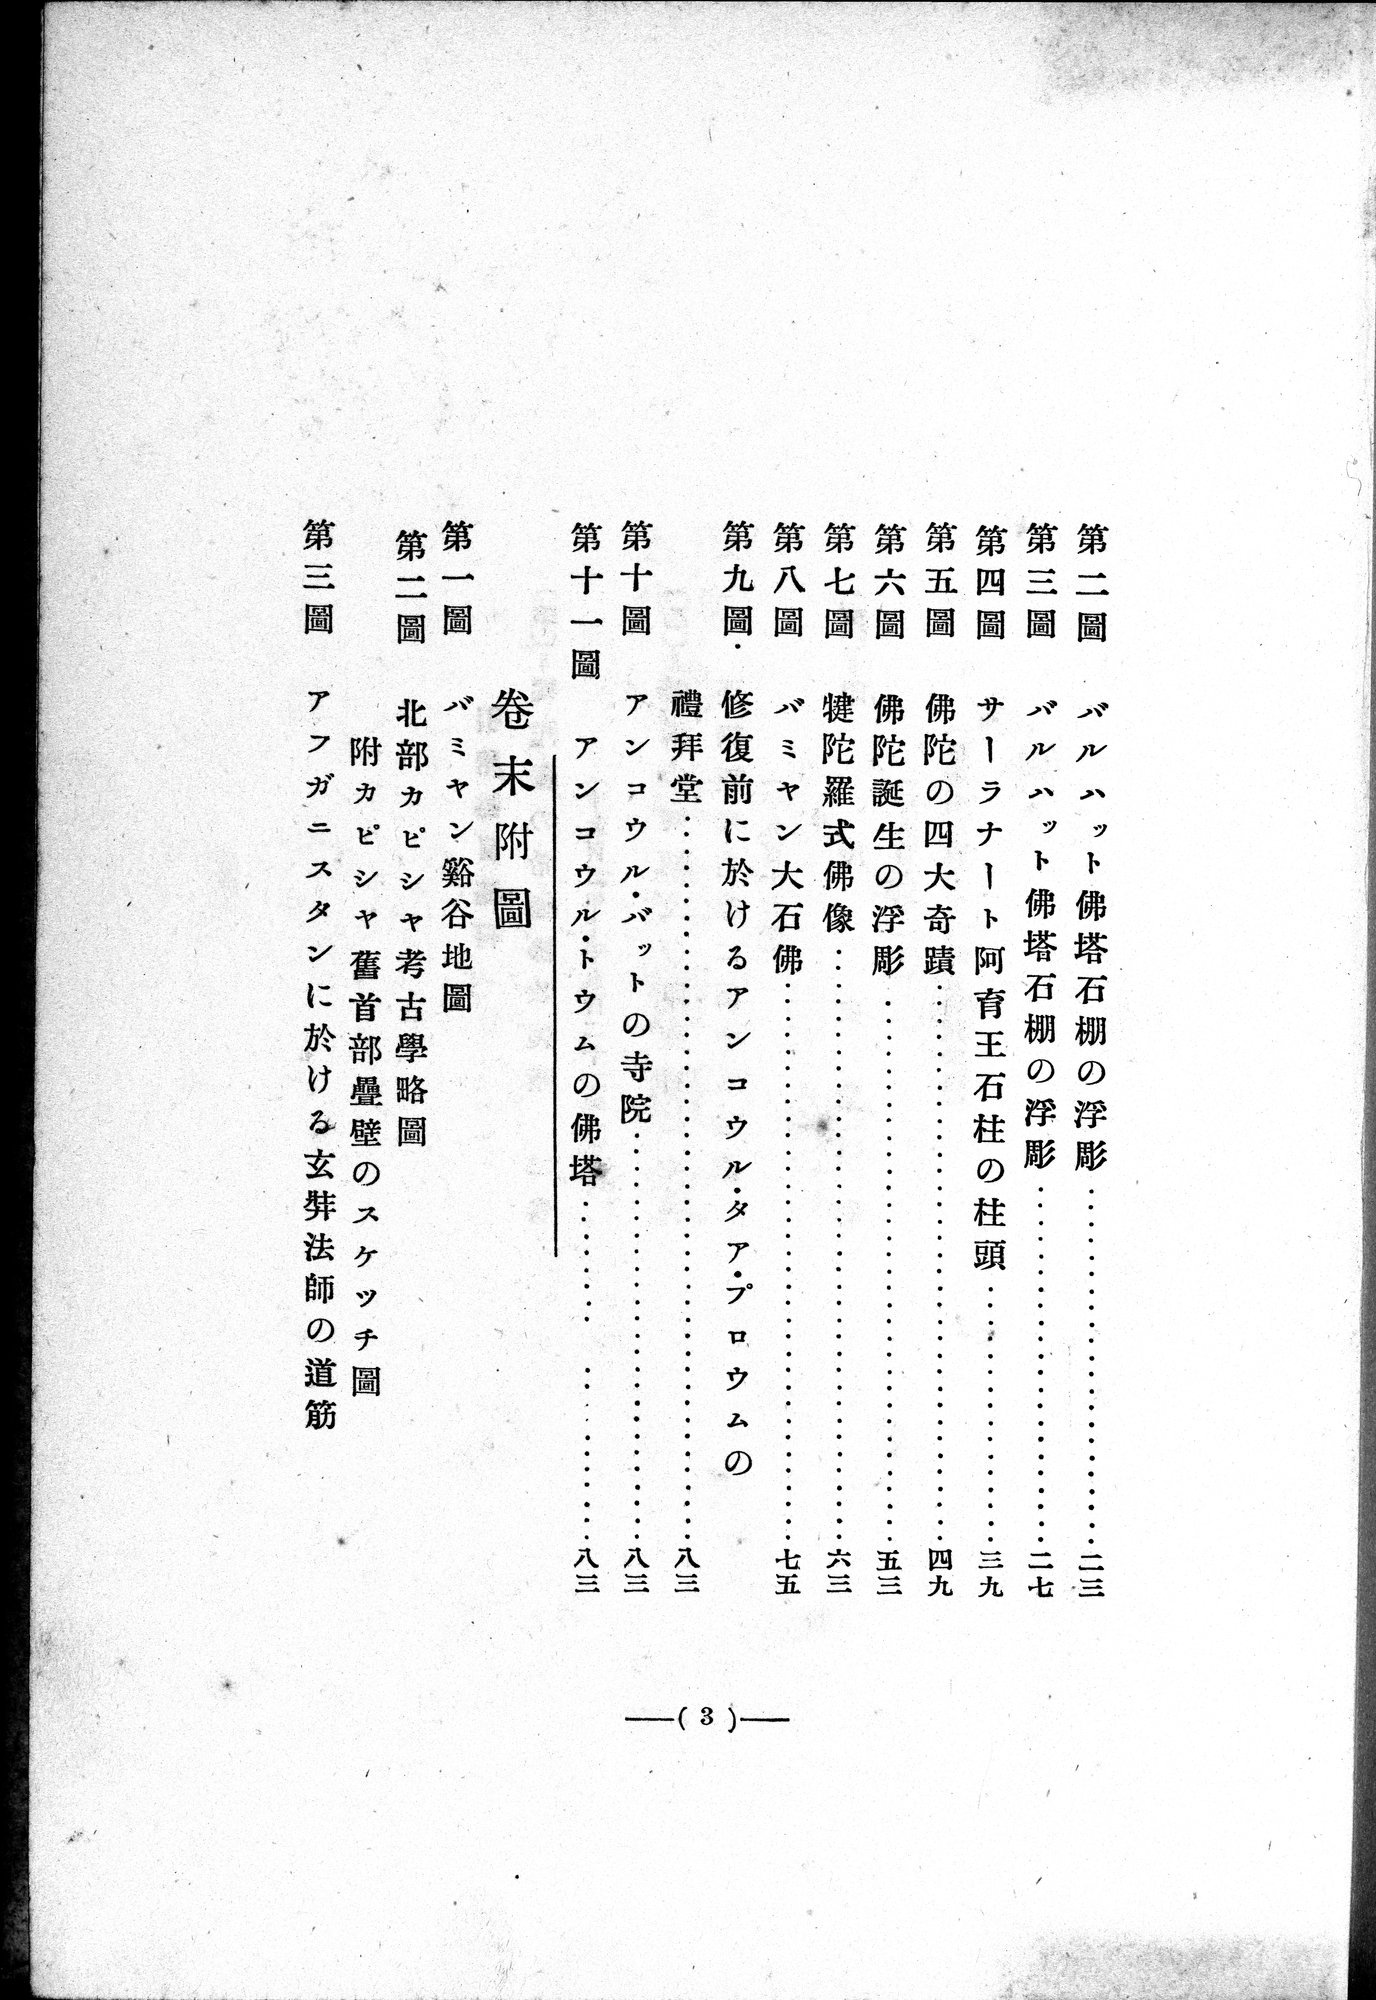 Études sur l'Art Bouddhique de l'Inde : vol.1 / Page 278 (Grayscale High Resolution Image)